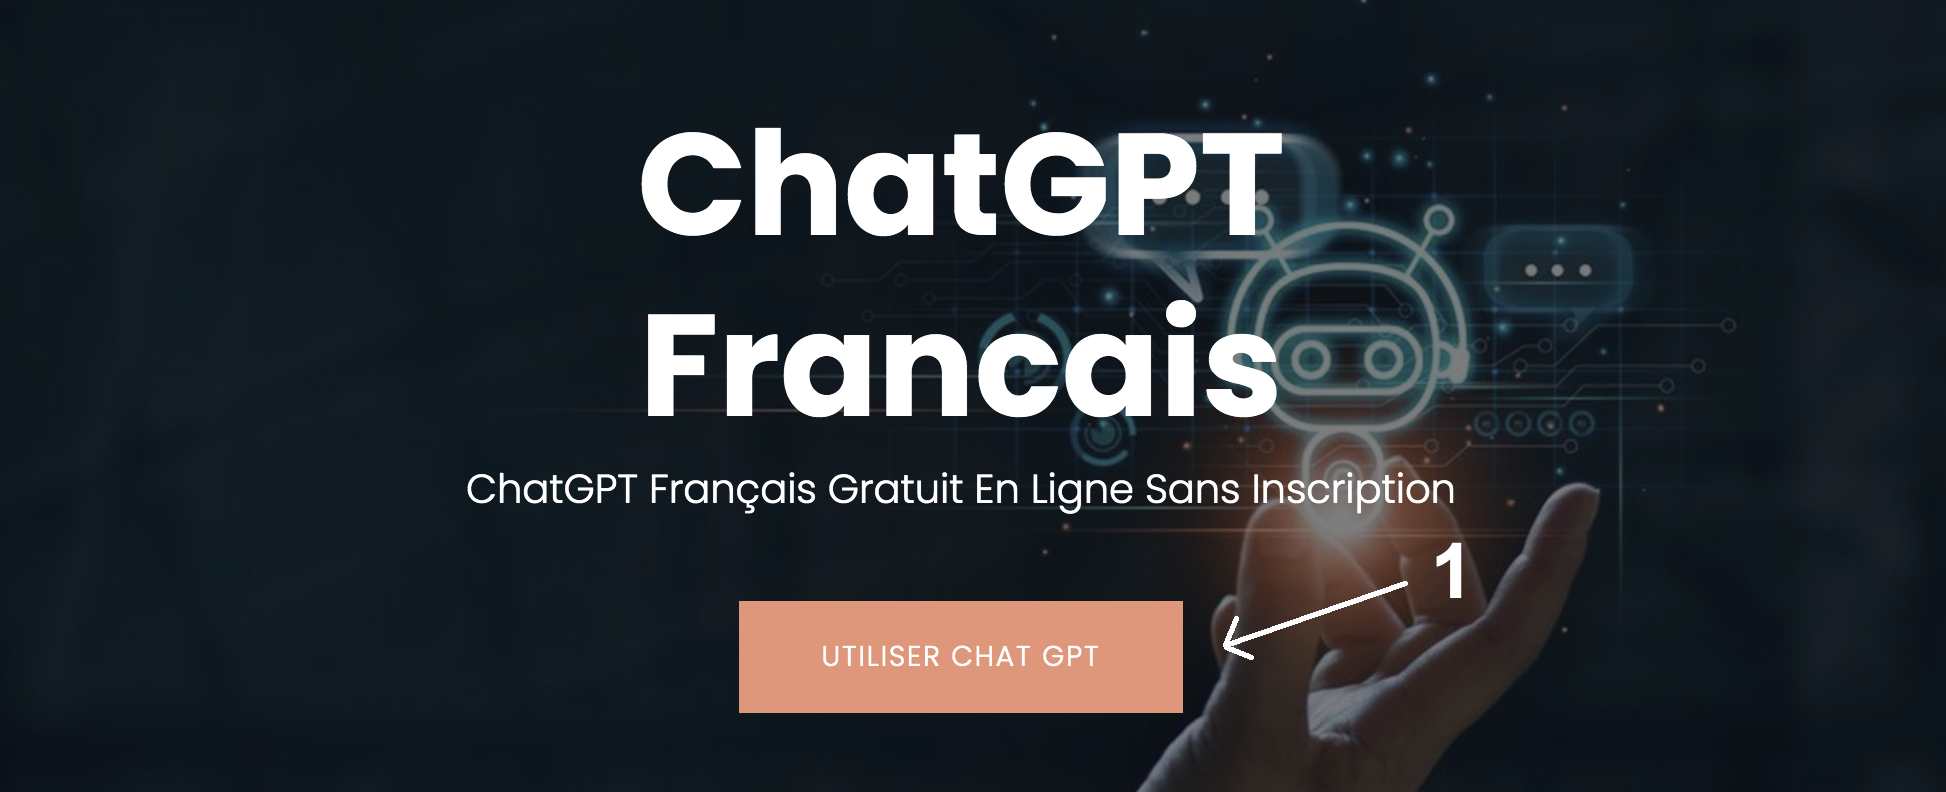 ChatGPT Francais - ChatGPT Gratuit En Ligne Sans inscription